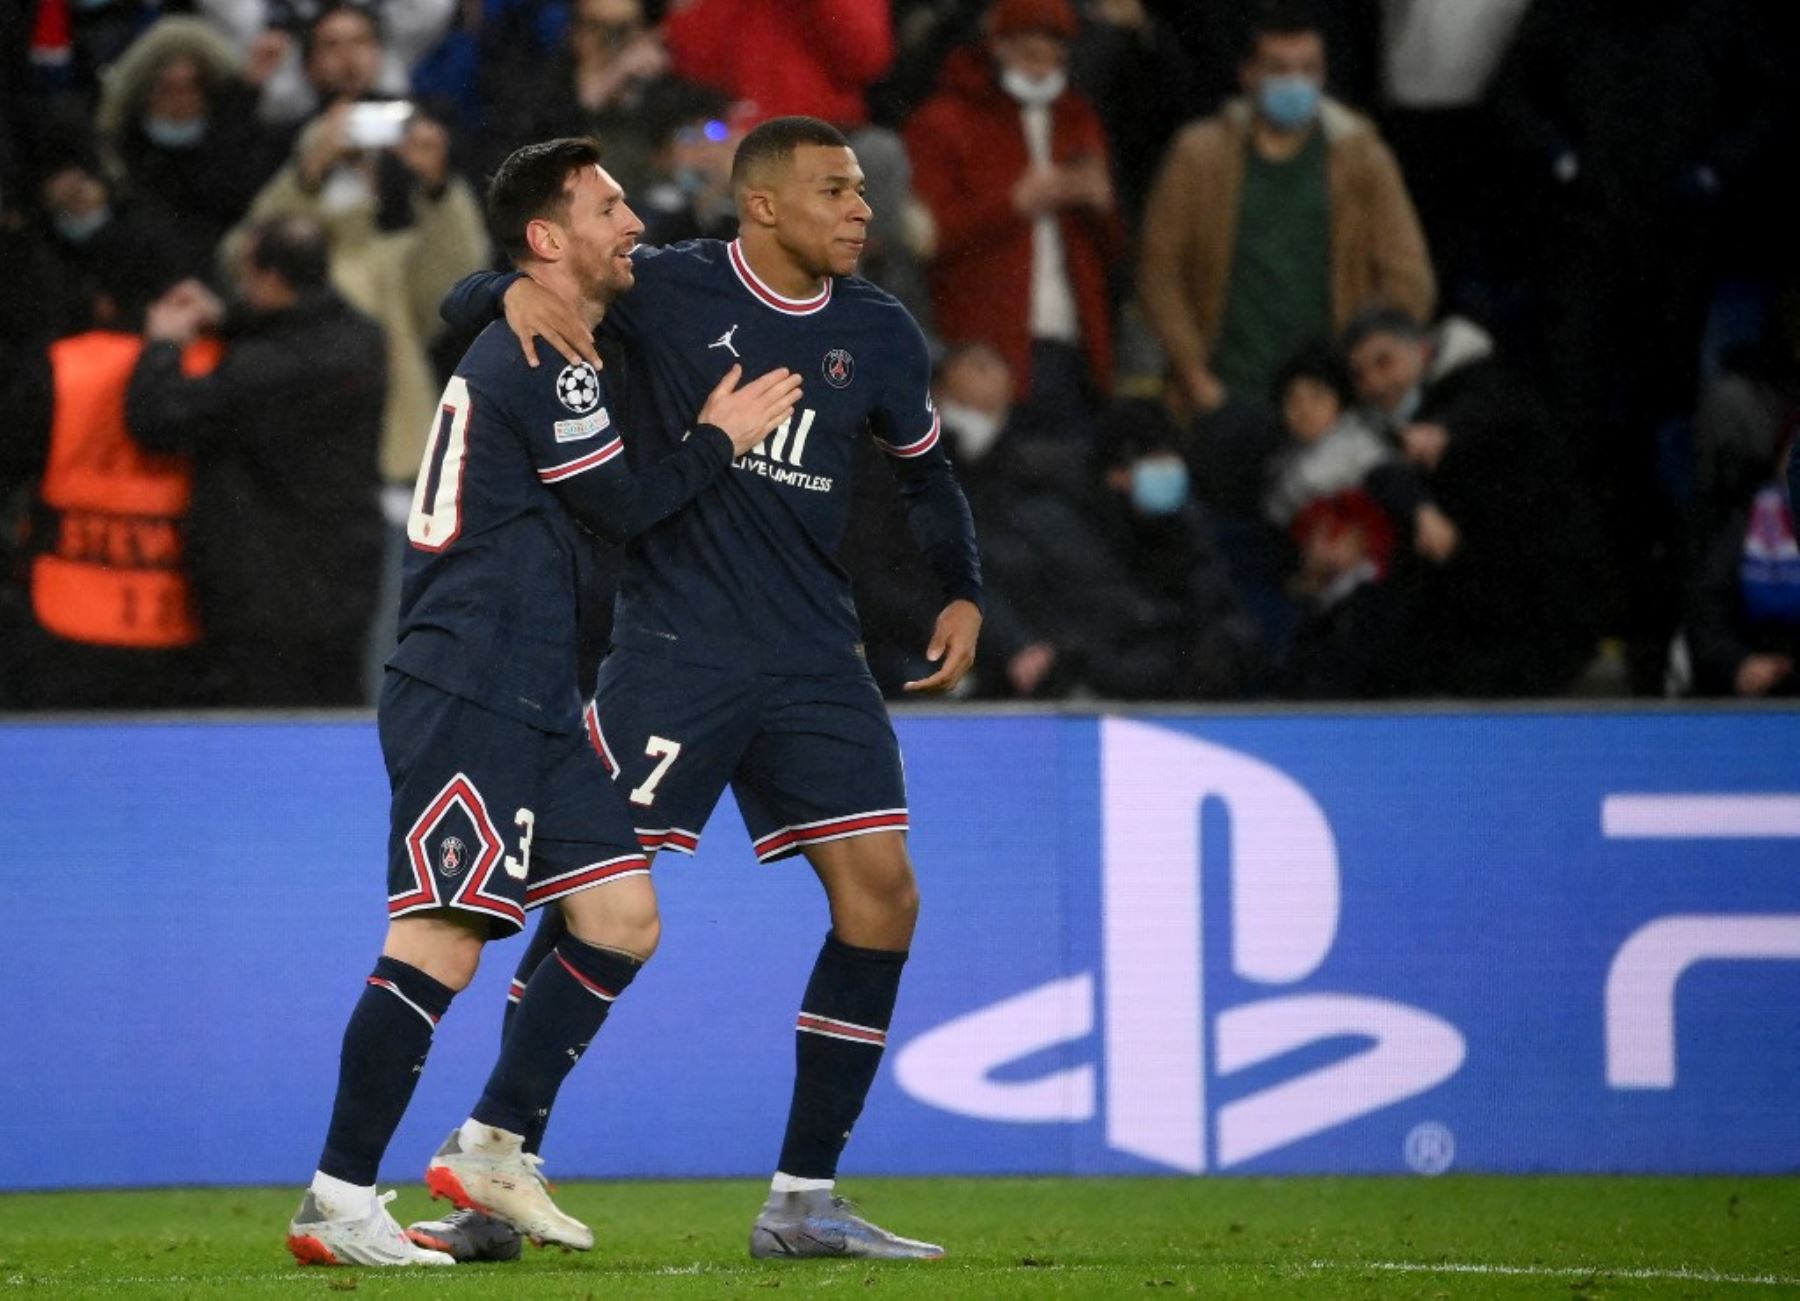 La dupla Messi-Mbappé comienza a funcionar en el PSG